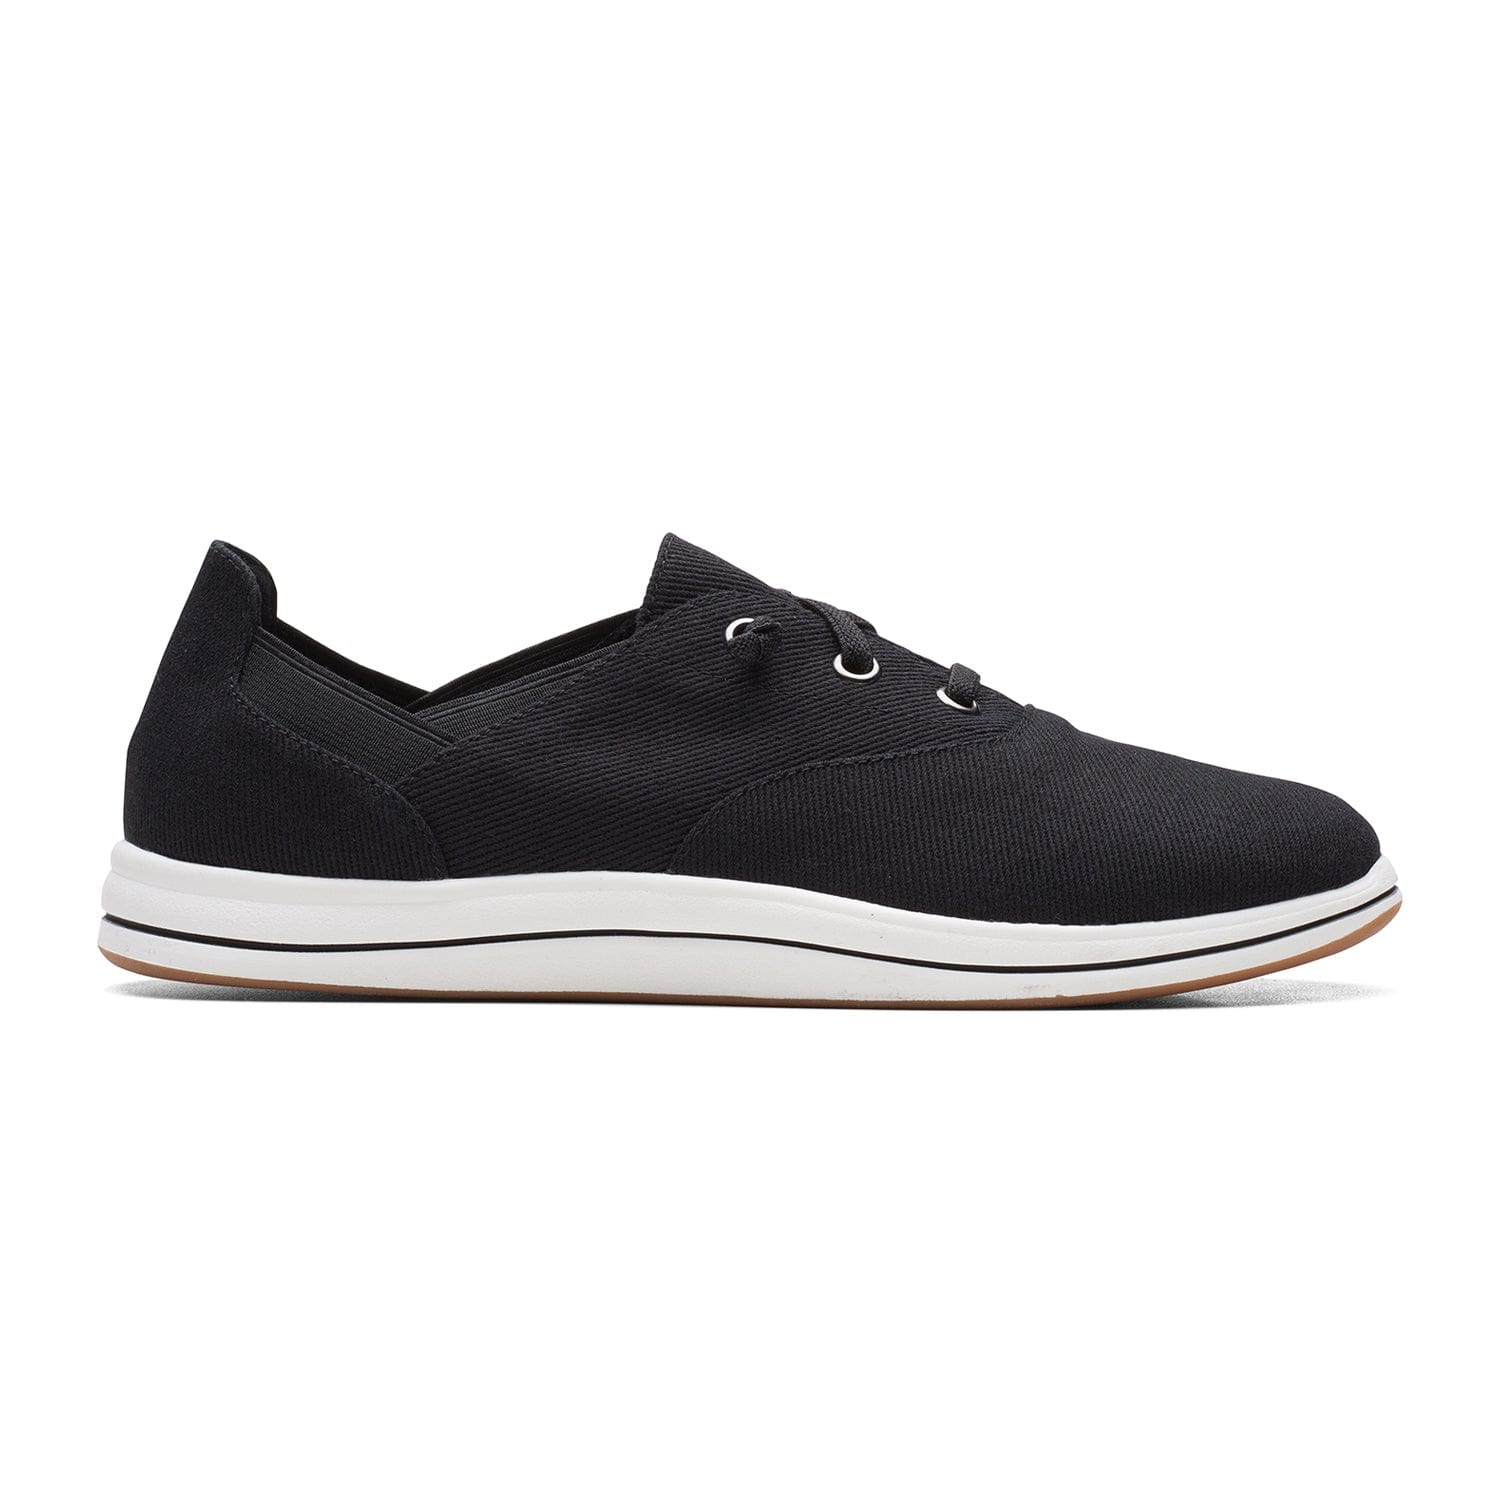 Clarks Brinkley Ave Shoes - Black - 261665974 - D Width (Standard Fit)